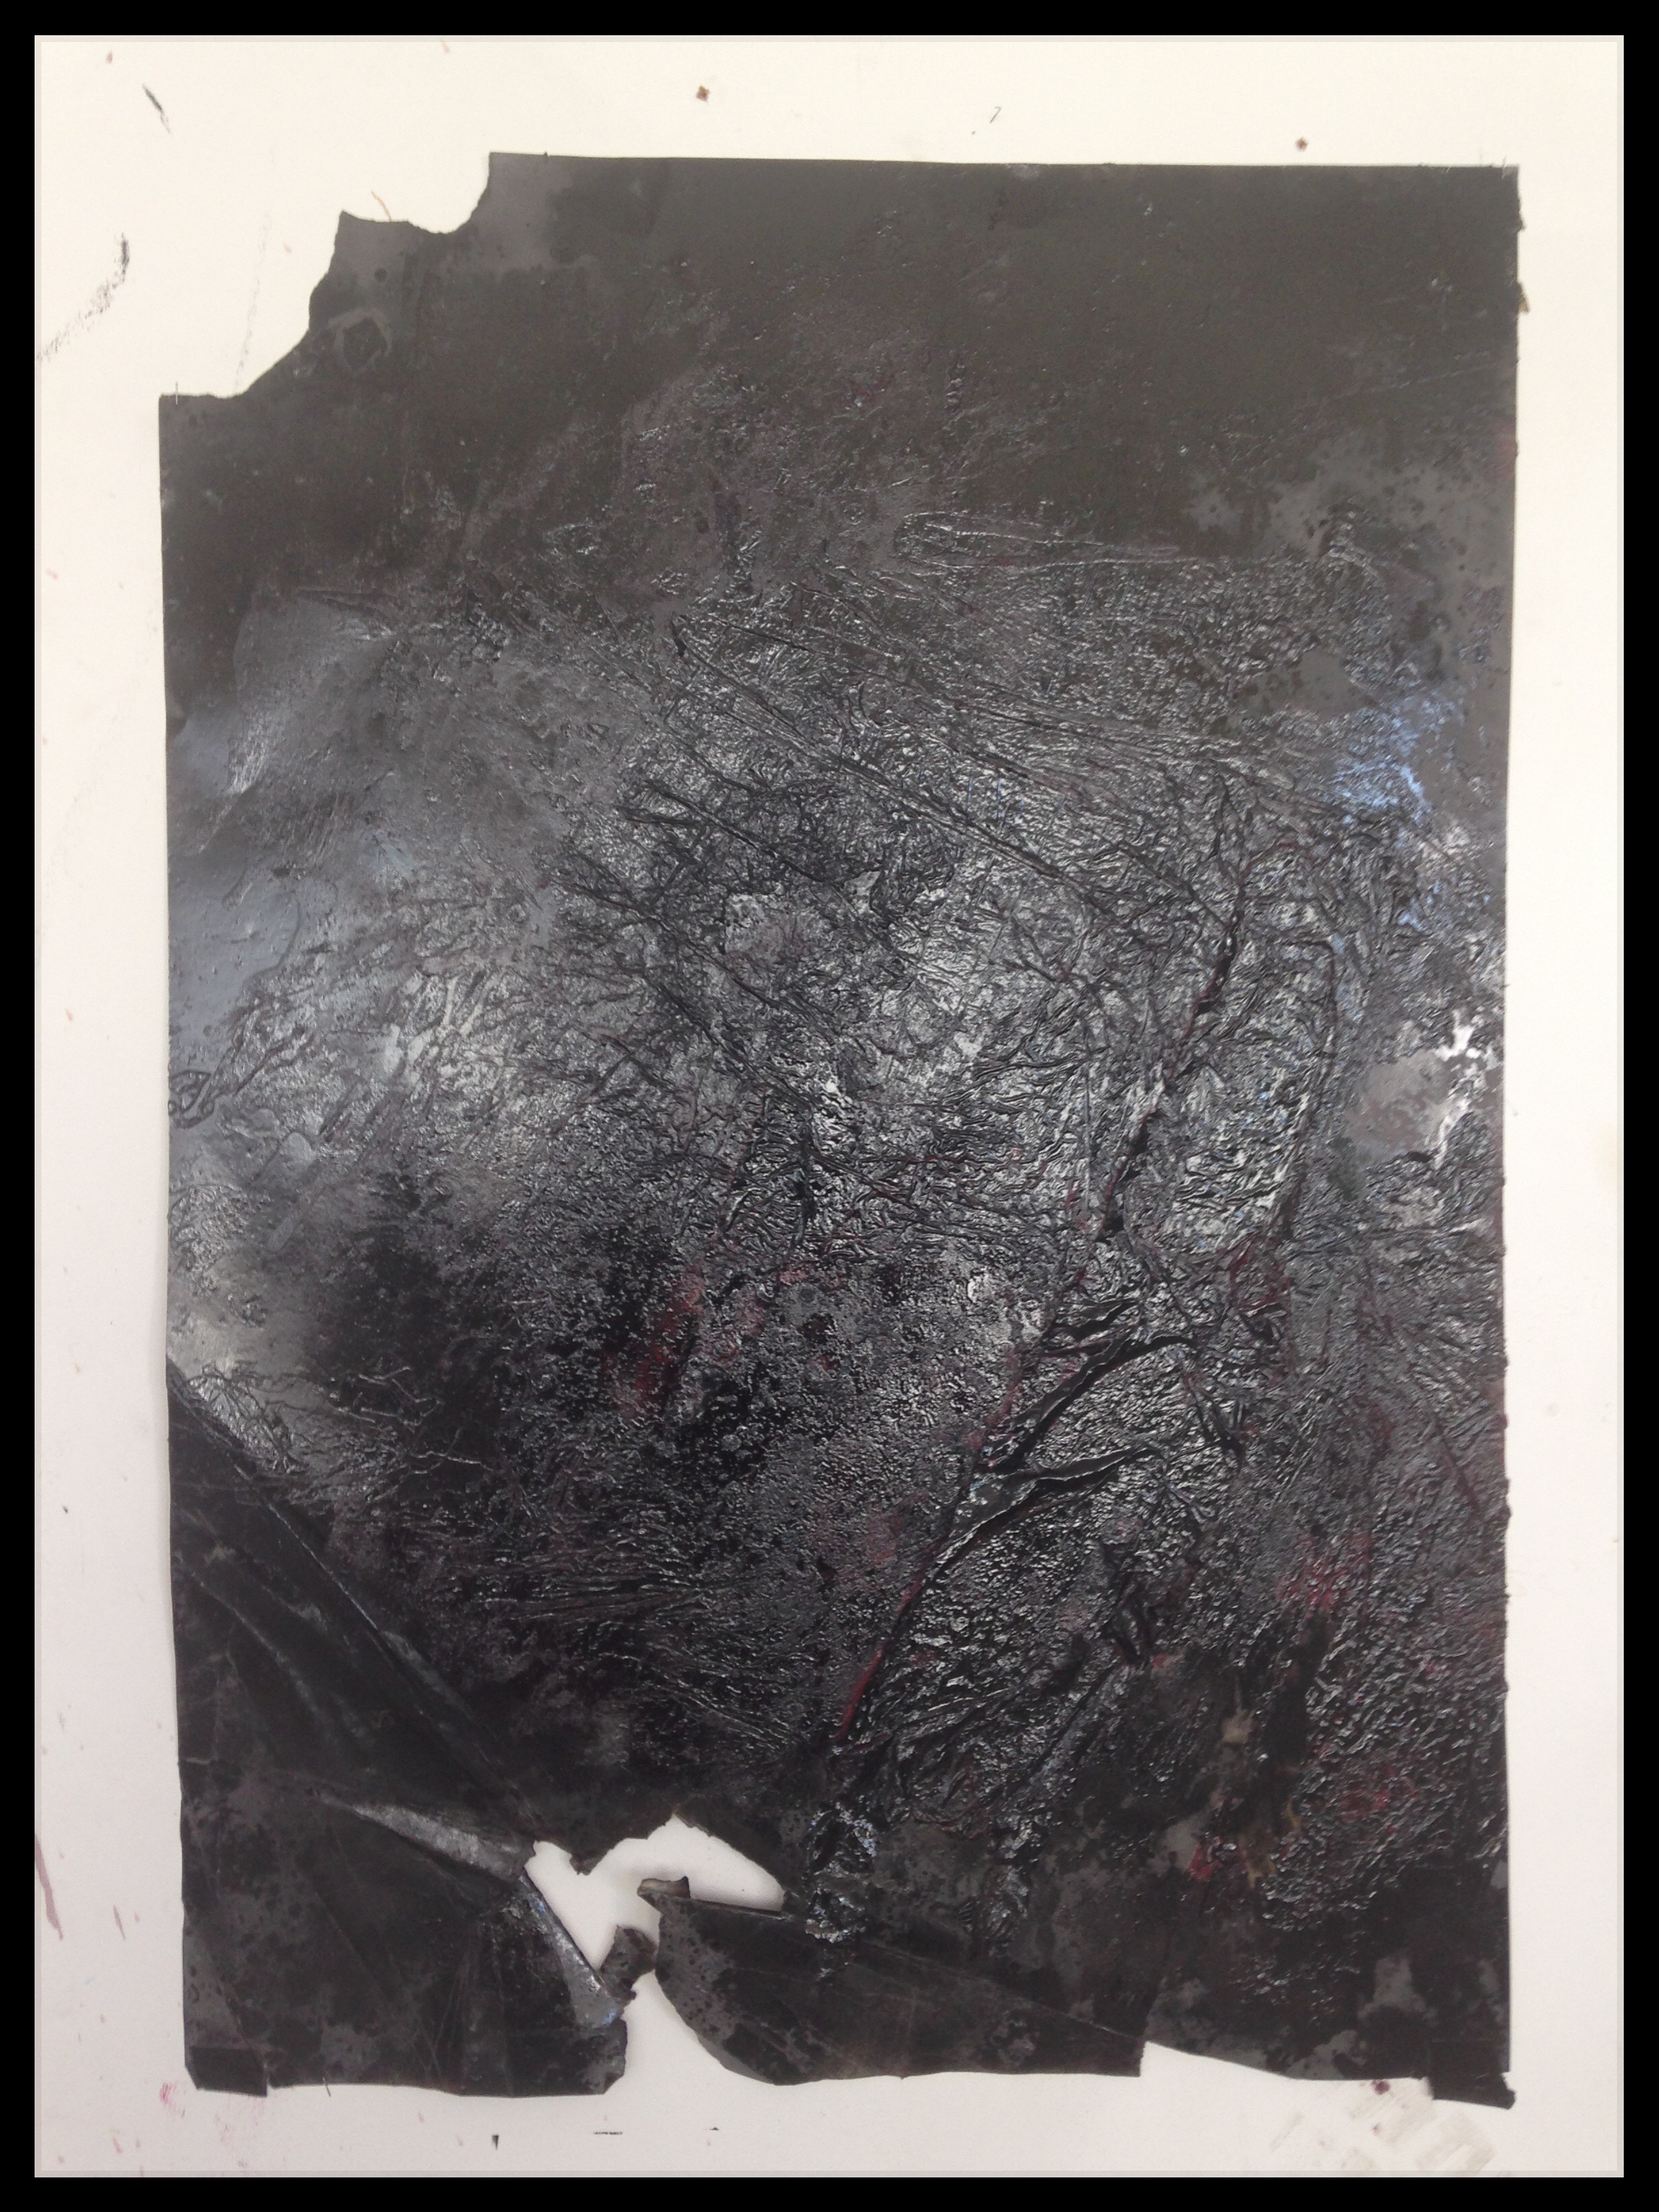 Piotr Janas, Bez tytułu, 2014, 100x70 cm + oprawa, olej, lakier, farba ftalowa na papierze